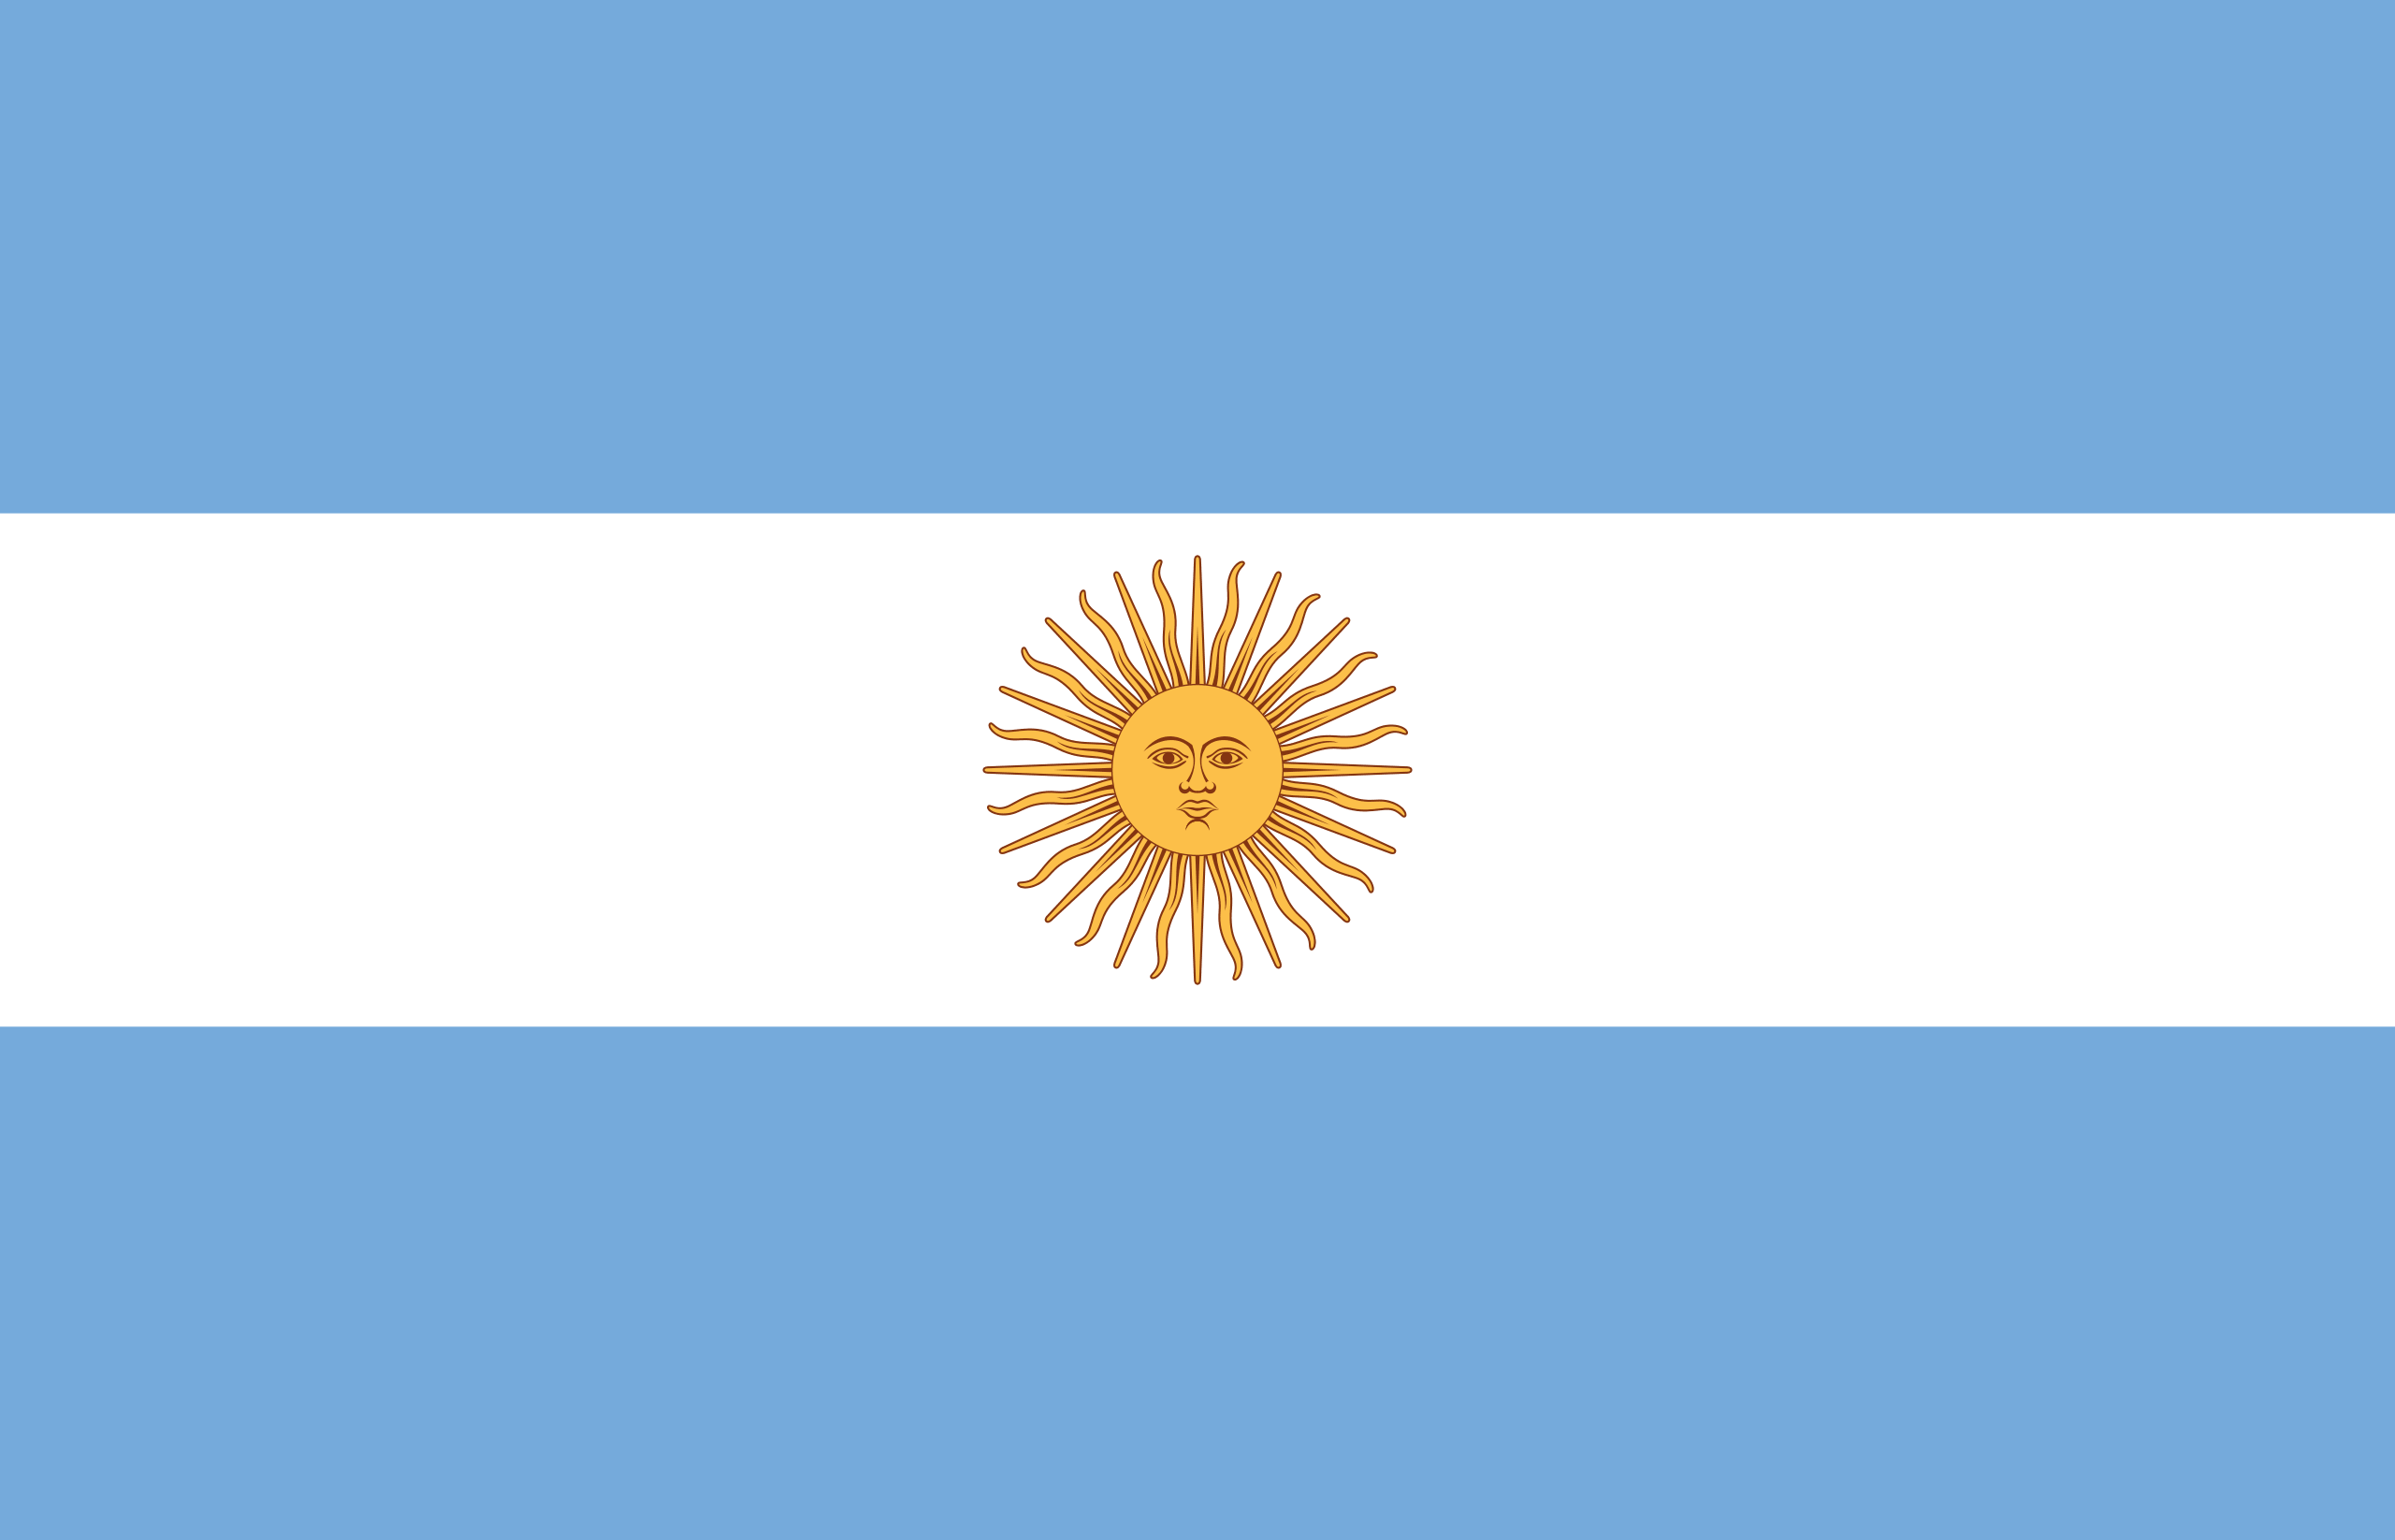 Argentina_flag